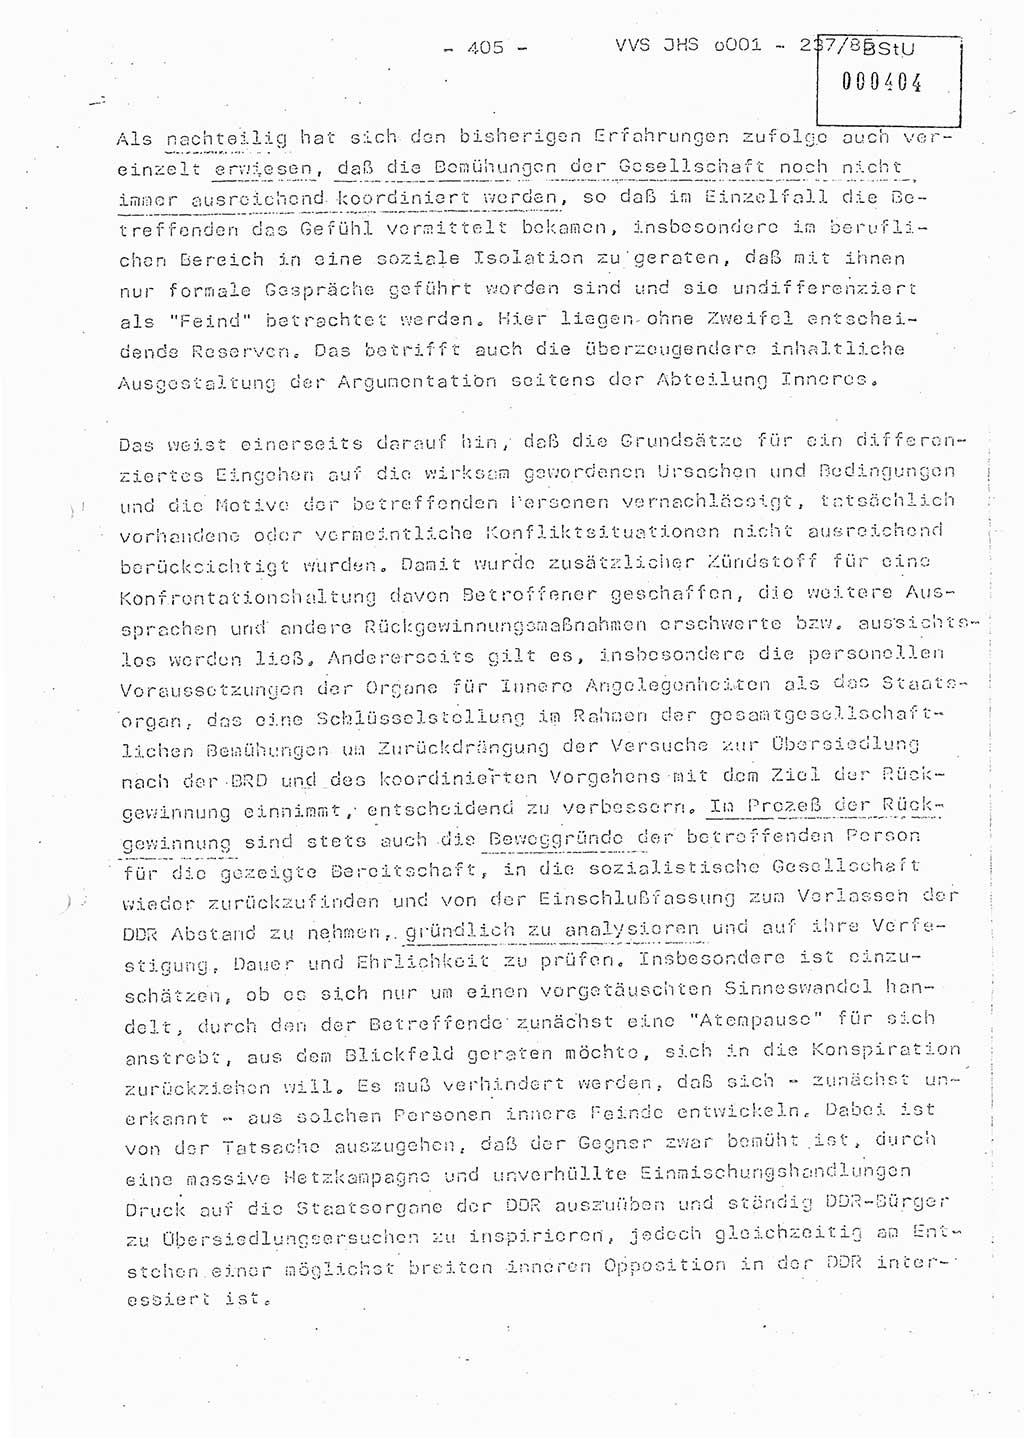 Dissertation Oberstleutnant Peter Jakulski (JHS), Oberstleutnat Christian Rudolph (HA Ⅸ), Major Horst Böttger (ZMD), Major Wolfgang Grüneberg (JHS), Major Albert Meutsch (JHS), Ministerium für Staatssicherheit (MfS) [Deutsche Demokratische Republik (DDR)], Juristische Hochschule (JHS), Vertrauliche Verschlußsache (VVS) o001-237/85, Potsdam 1985, Seite 405 (Diss. MfS DDR JHS VVS o001-237/85 1985, S. 405)